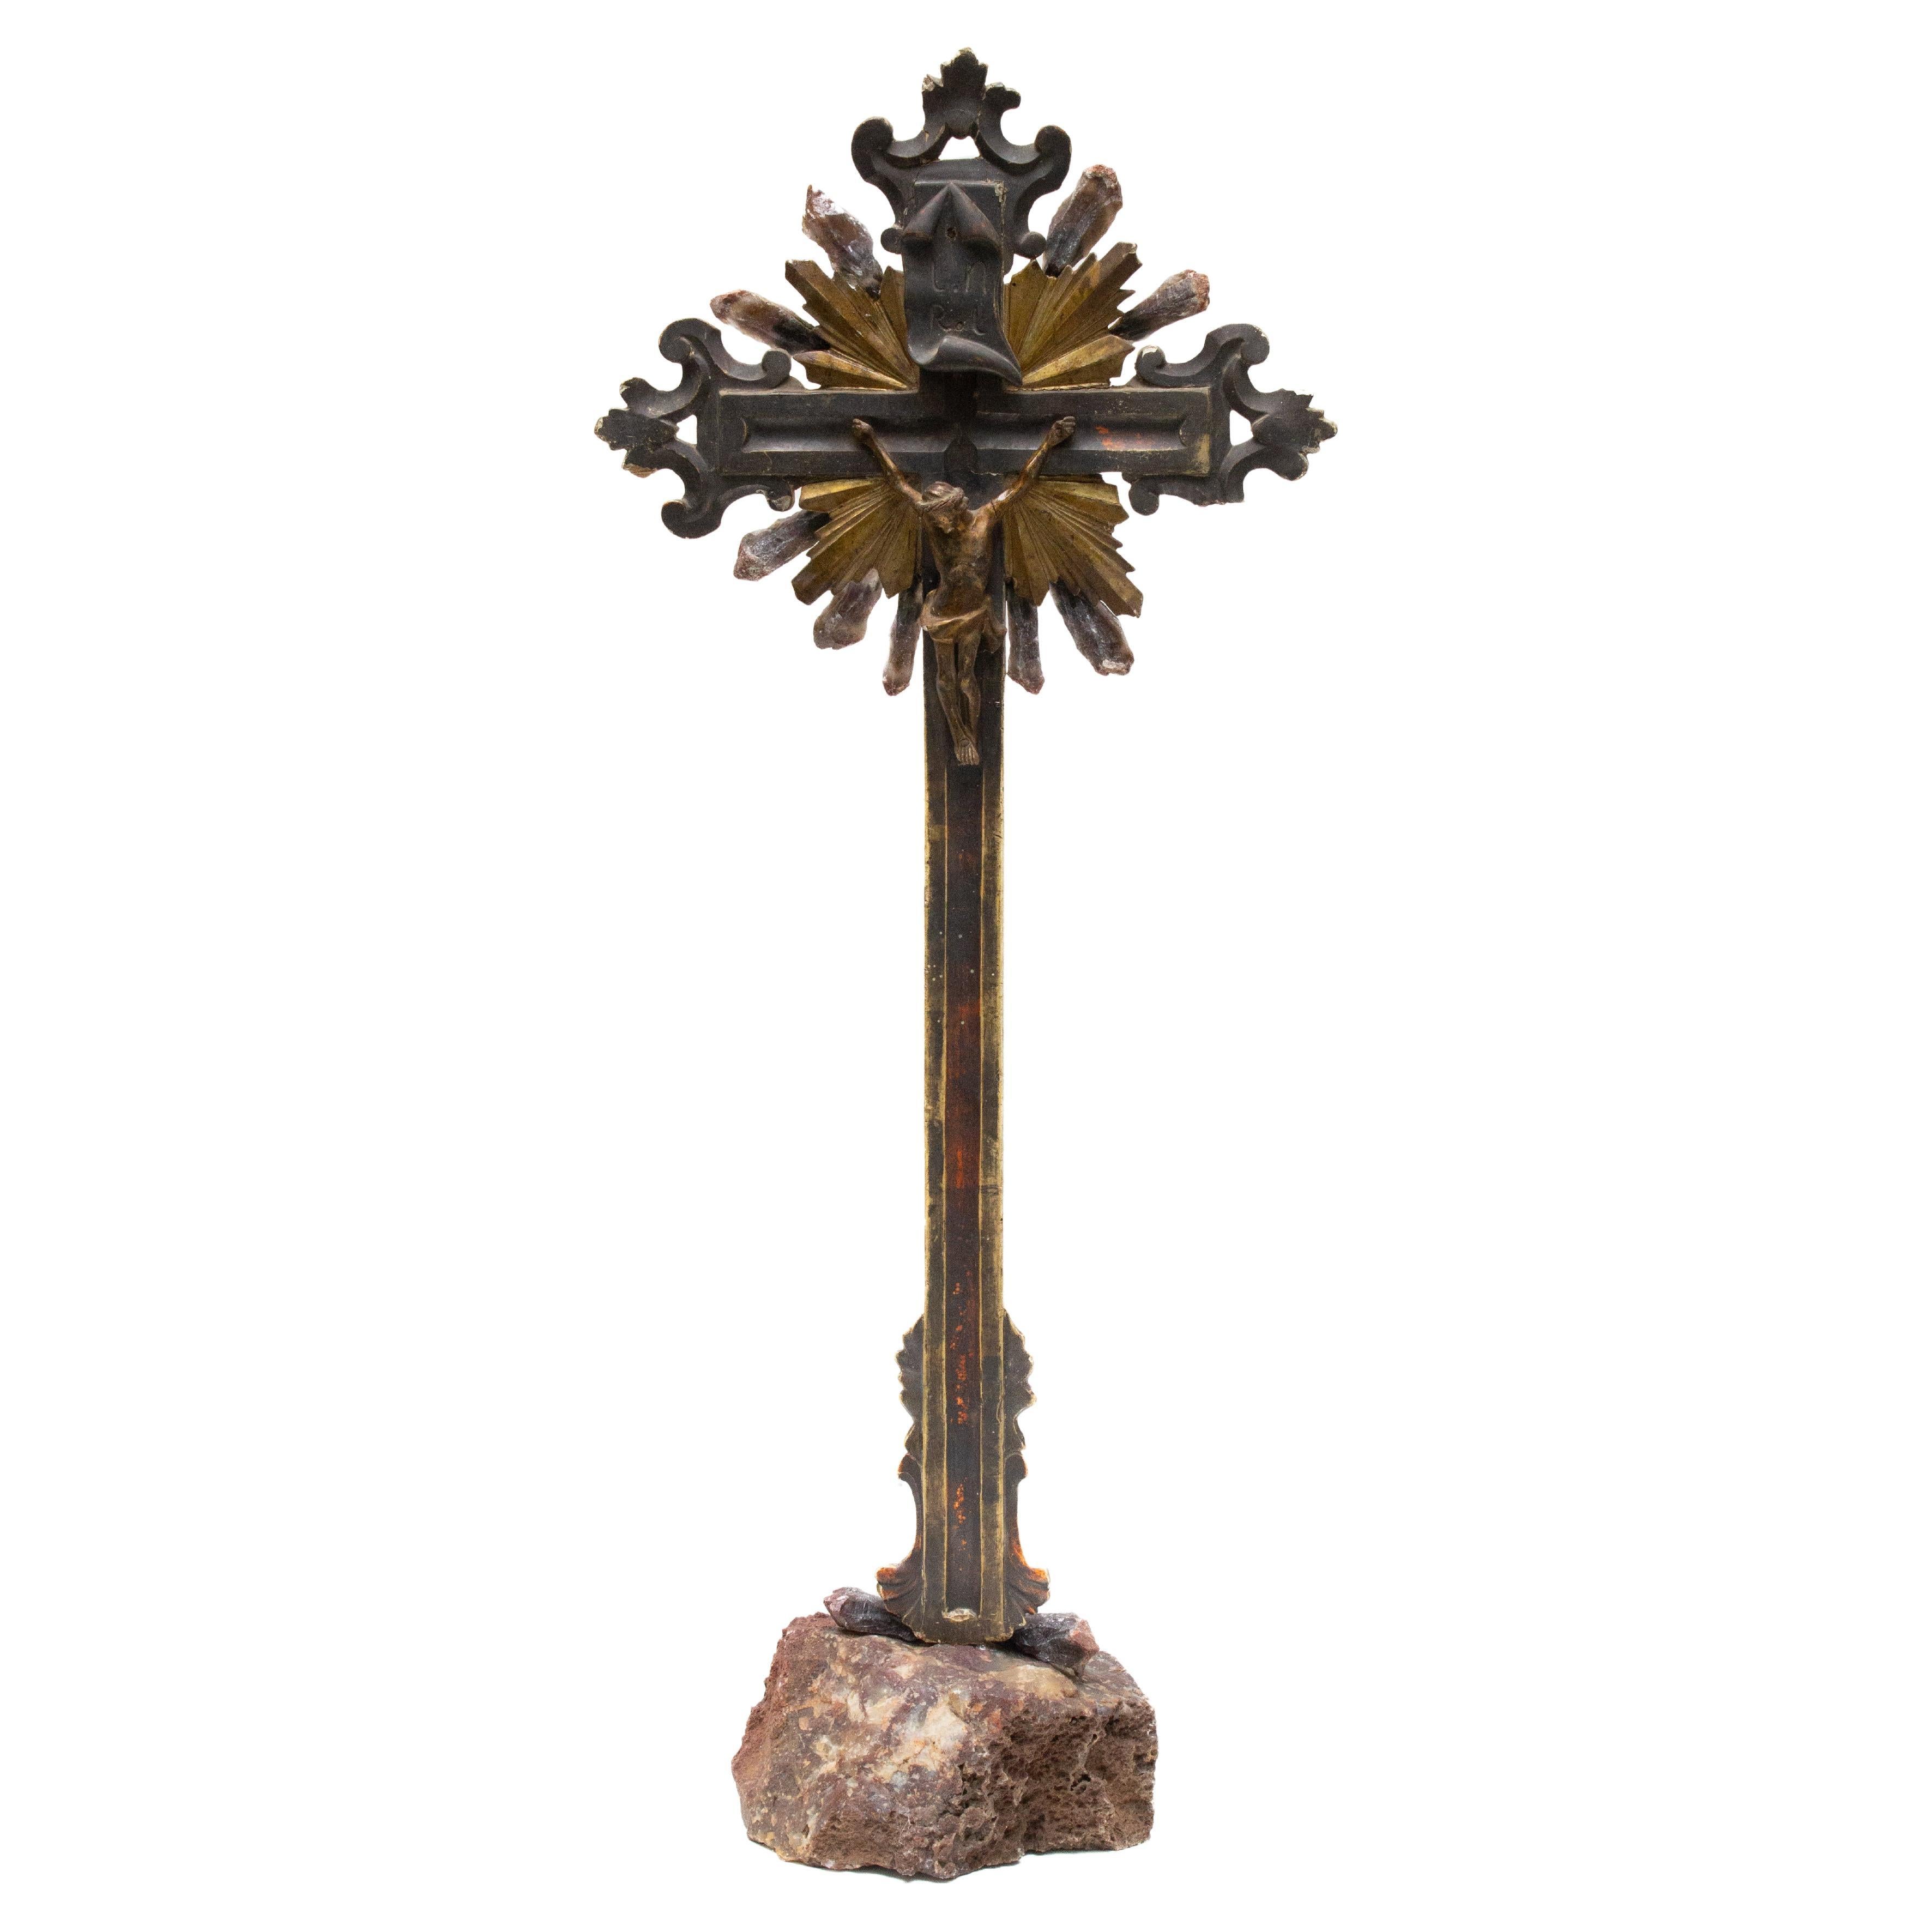 Crucifijo escultórico italiano del siglo XVIII montado sobre jaspe con puntas de cristal